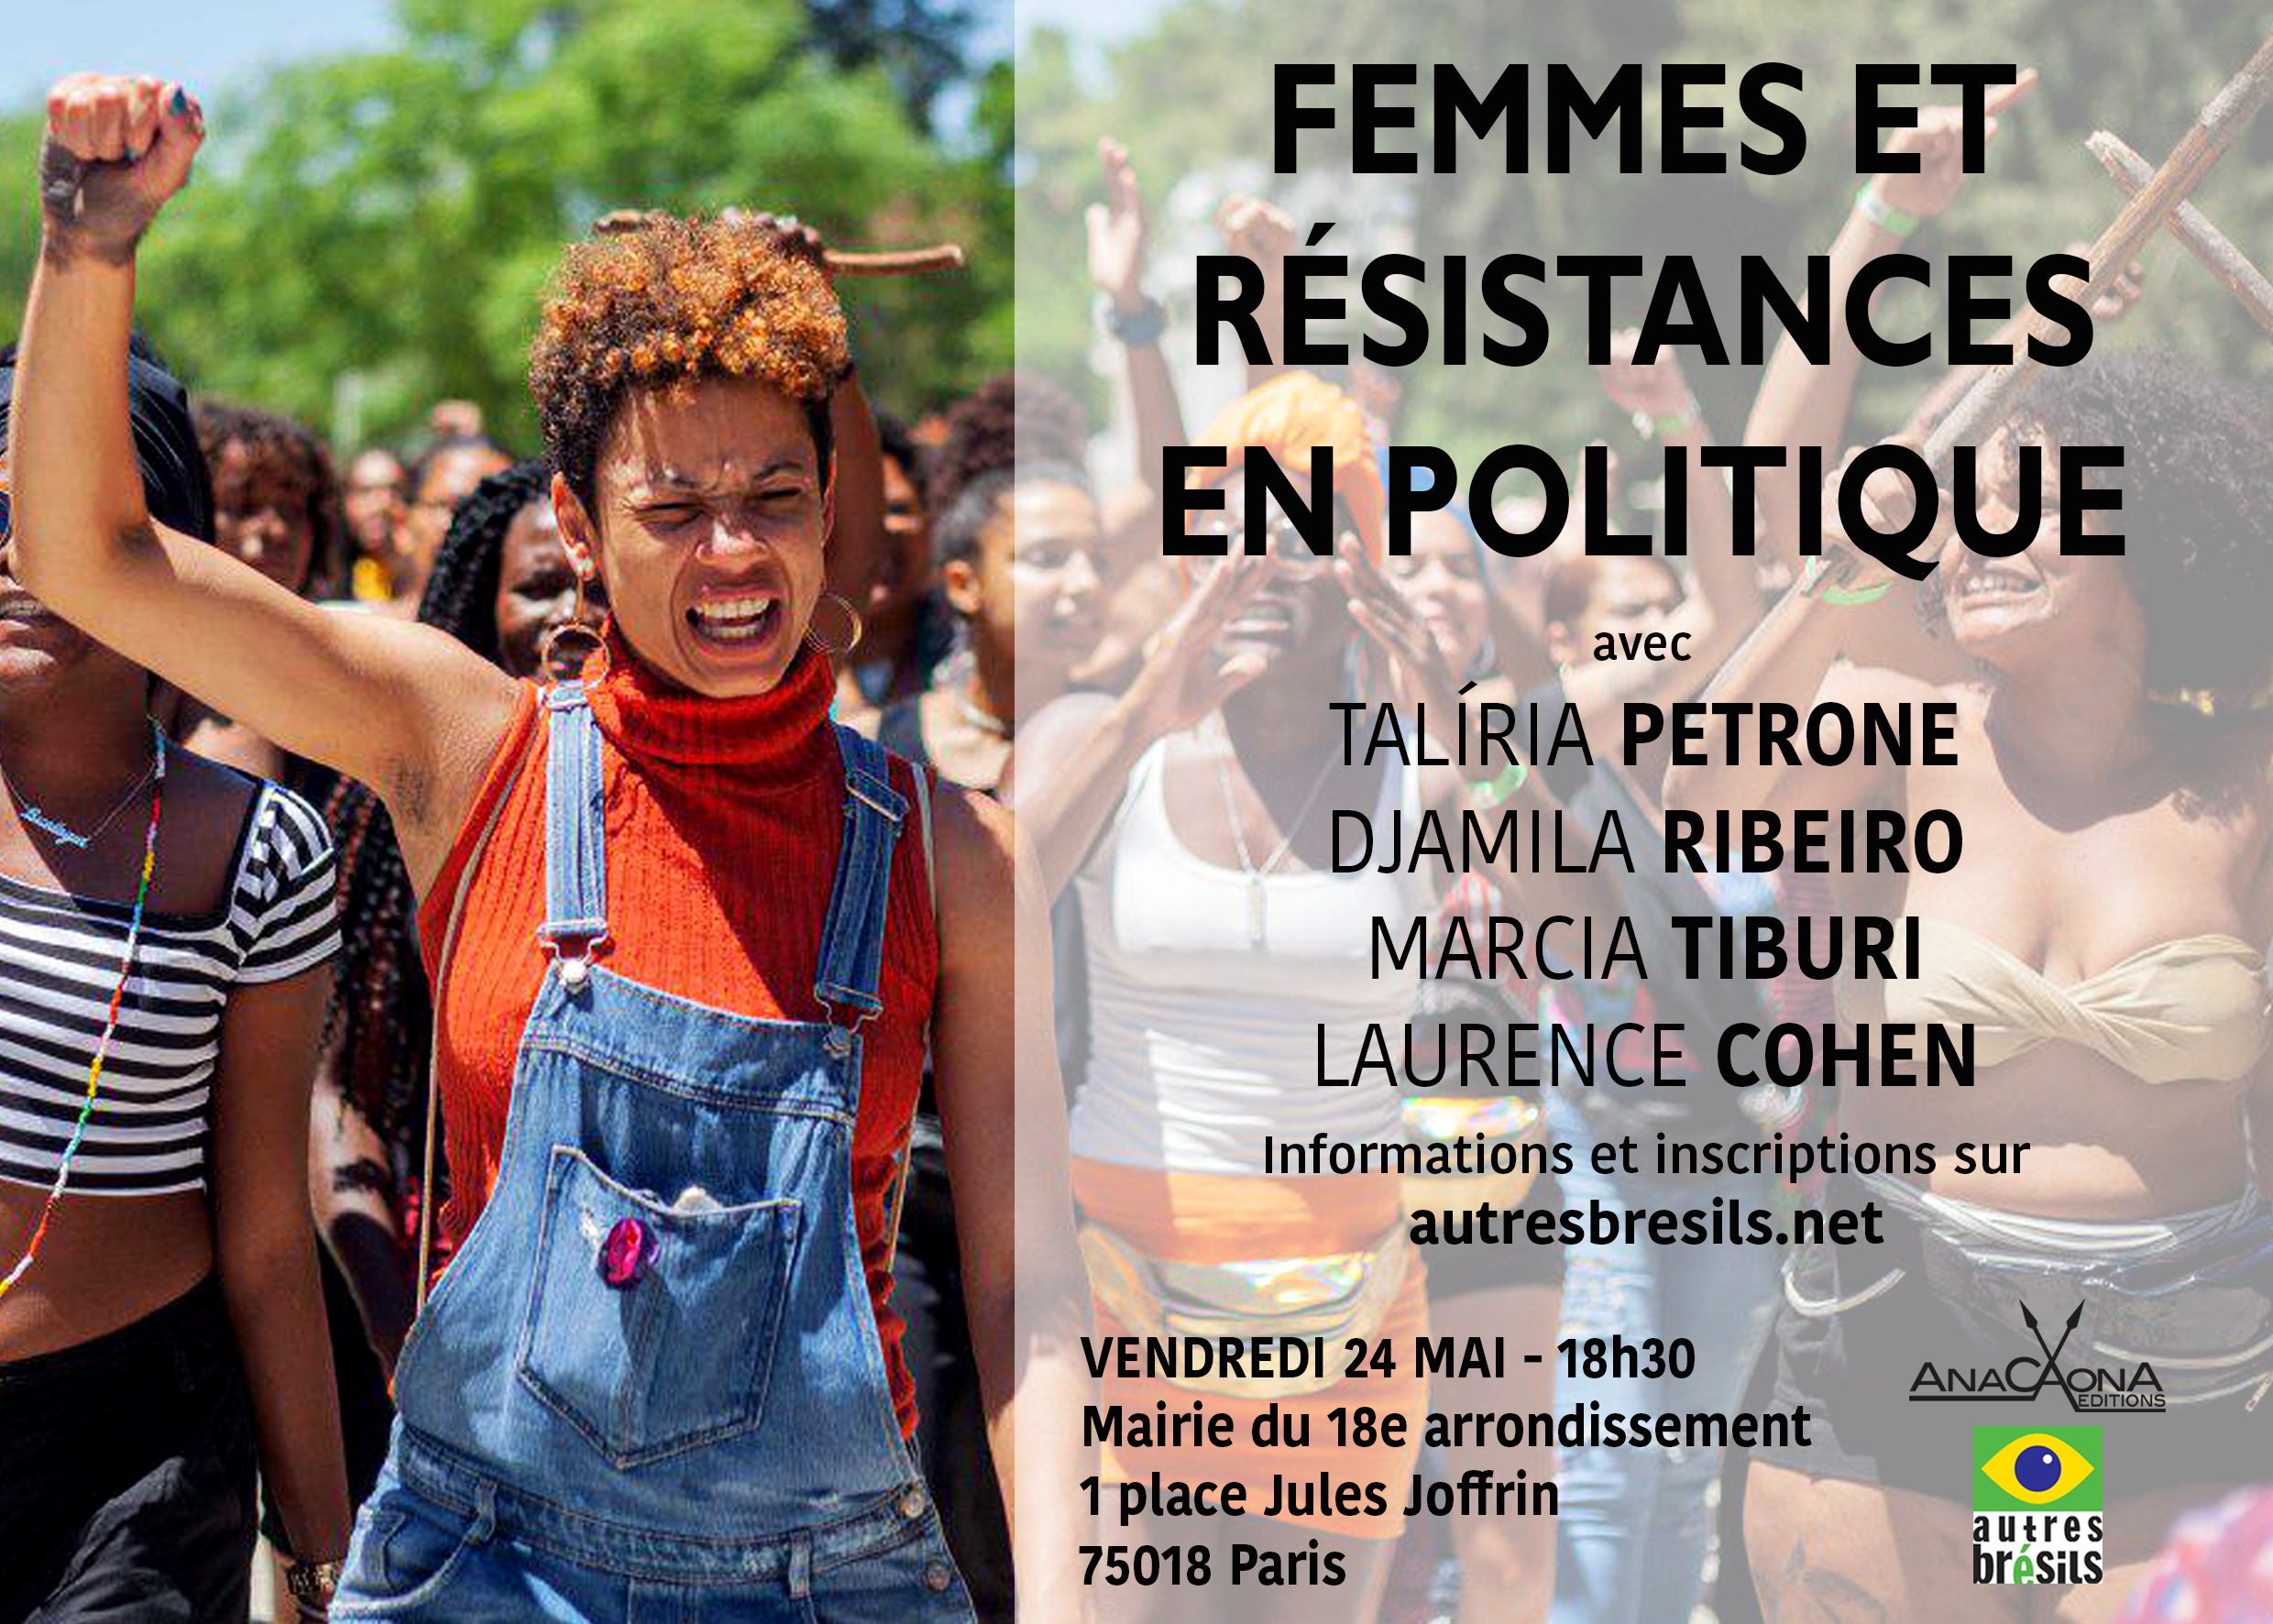 « Femmes et résistances en politique au Brésil », vendredi 24 mai, 18h30.